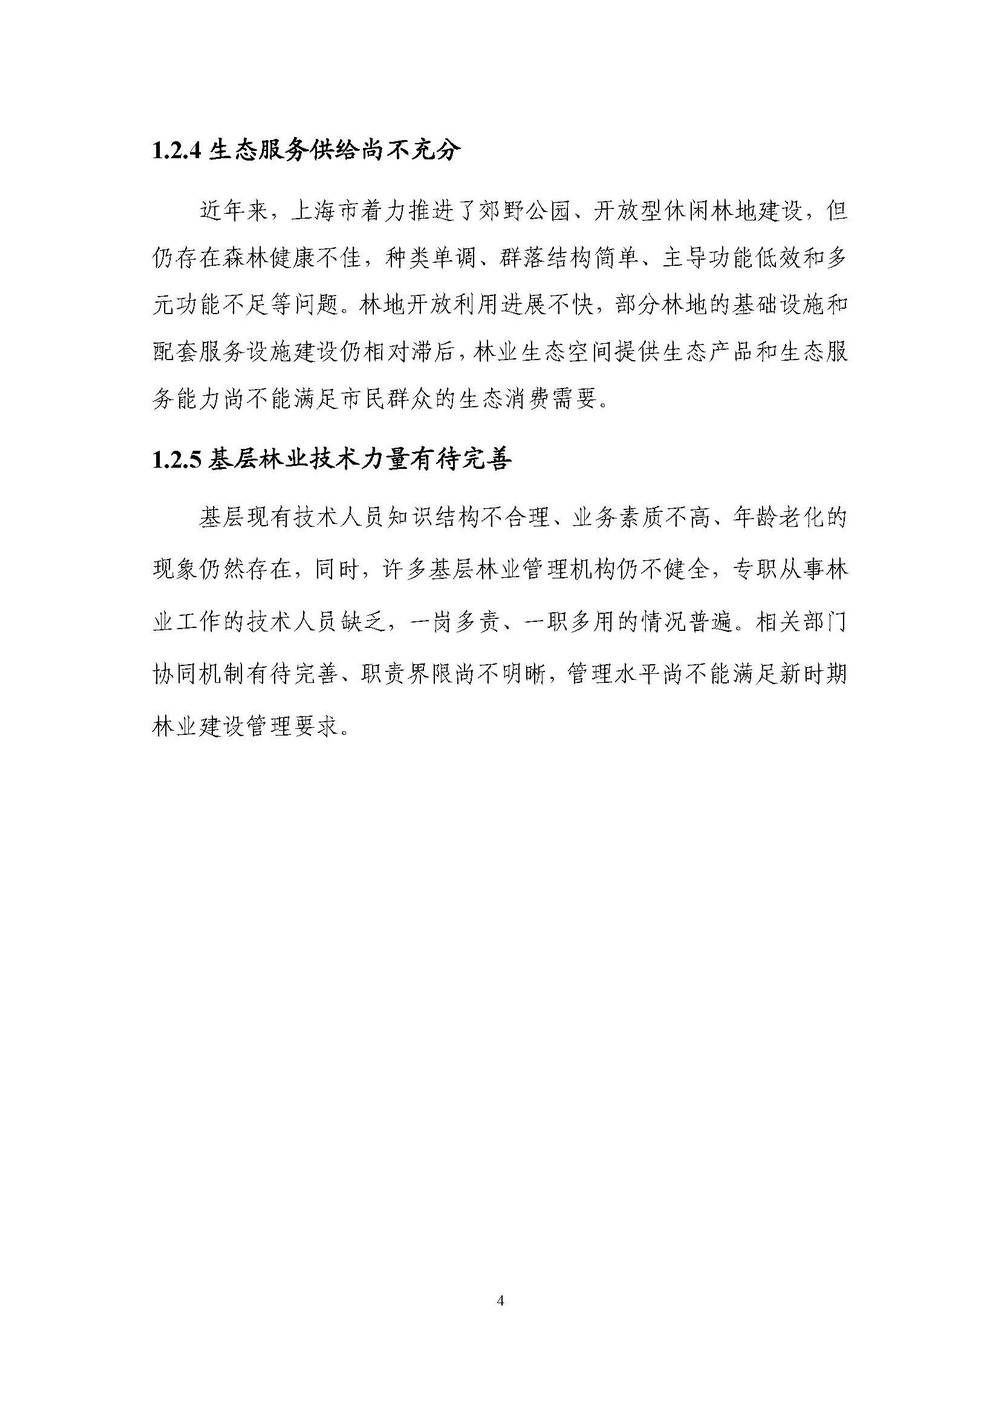 上海市森林和林地保护利用规划文本 公开稿 附图_页面_07.jpg